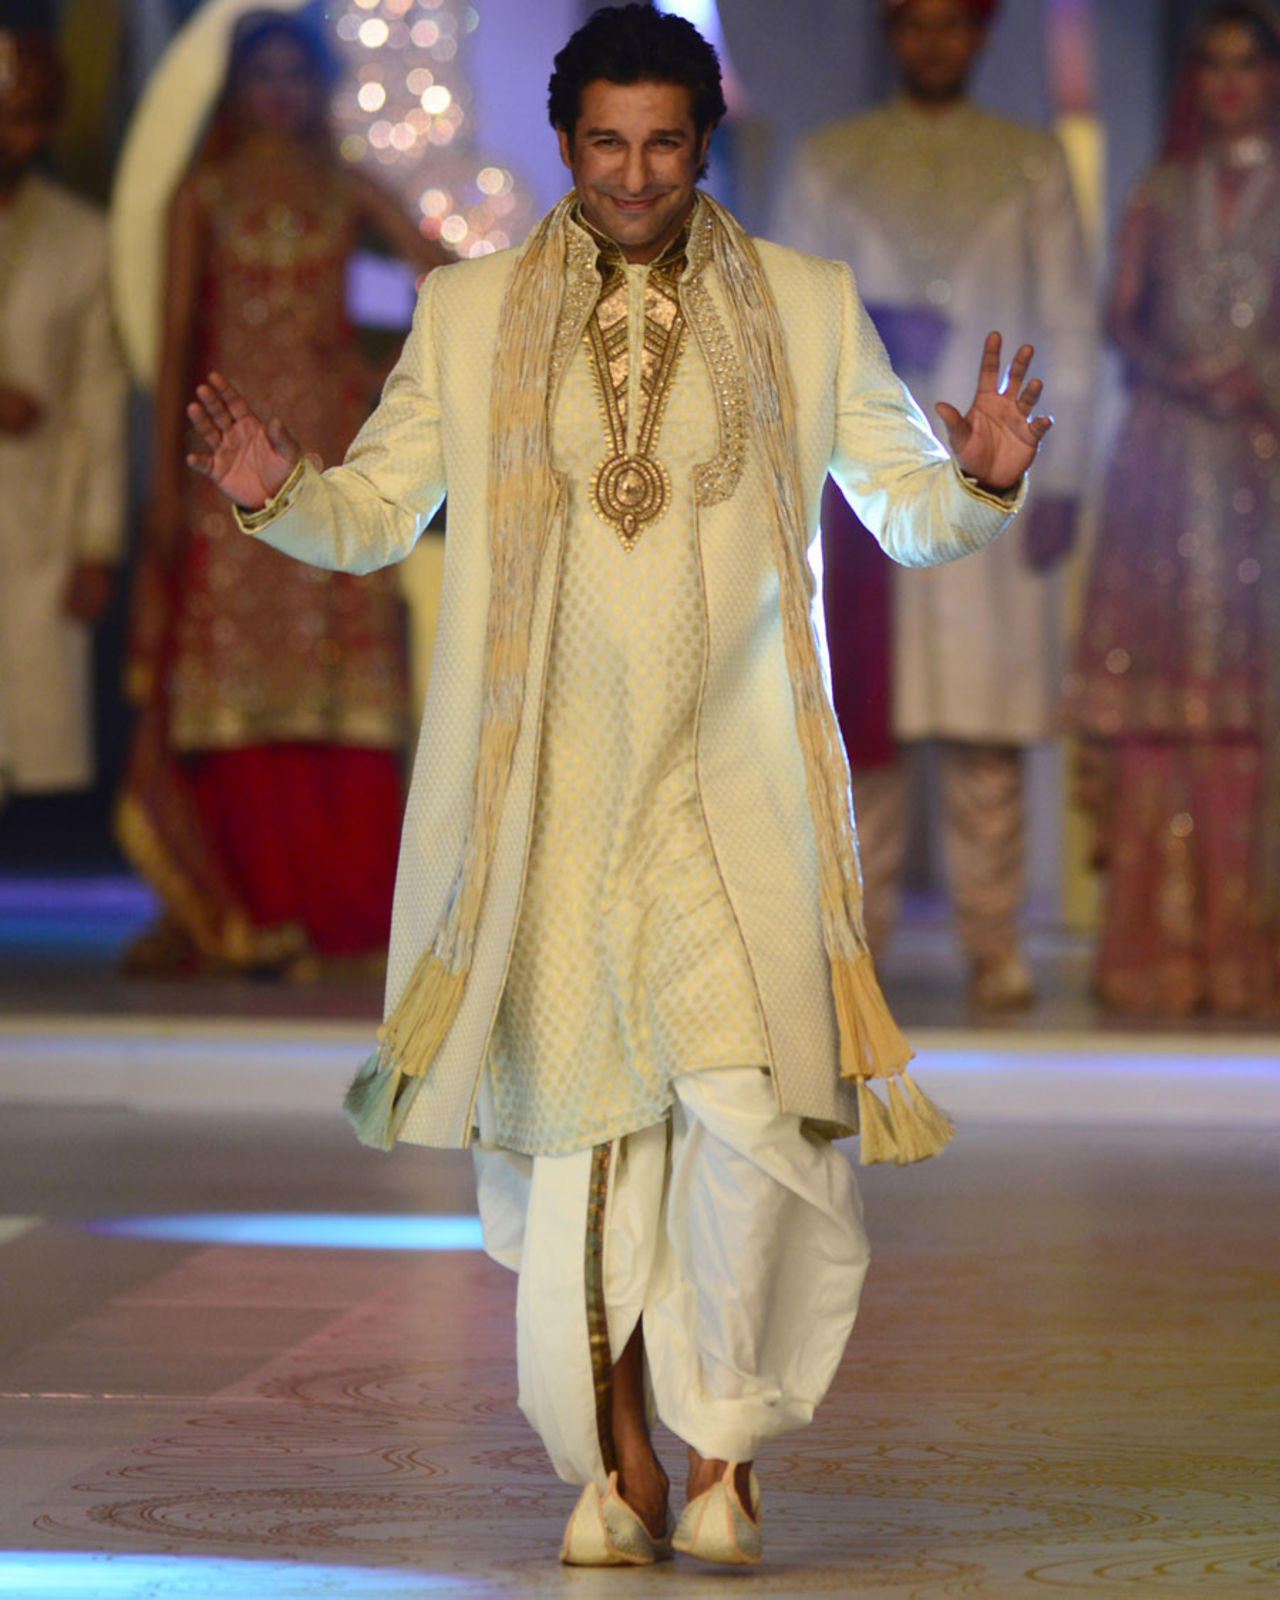 Wasim Akram walks the ramp during the Bridal Couture Week, Karachi, April 21, 2013